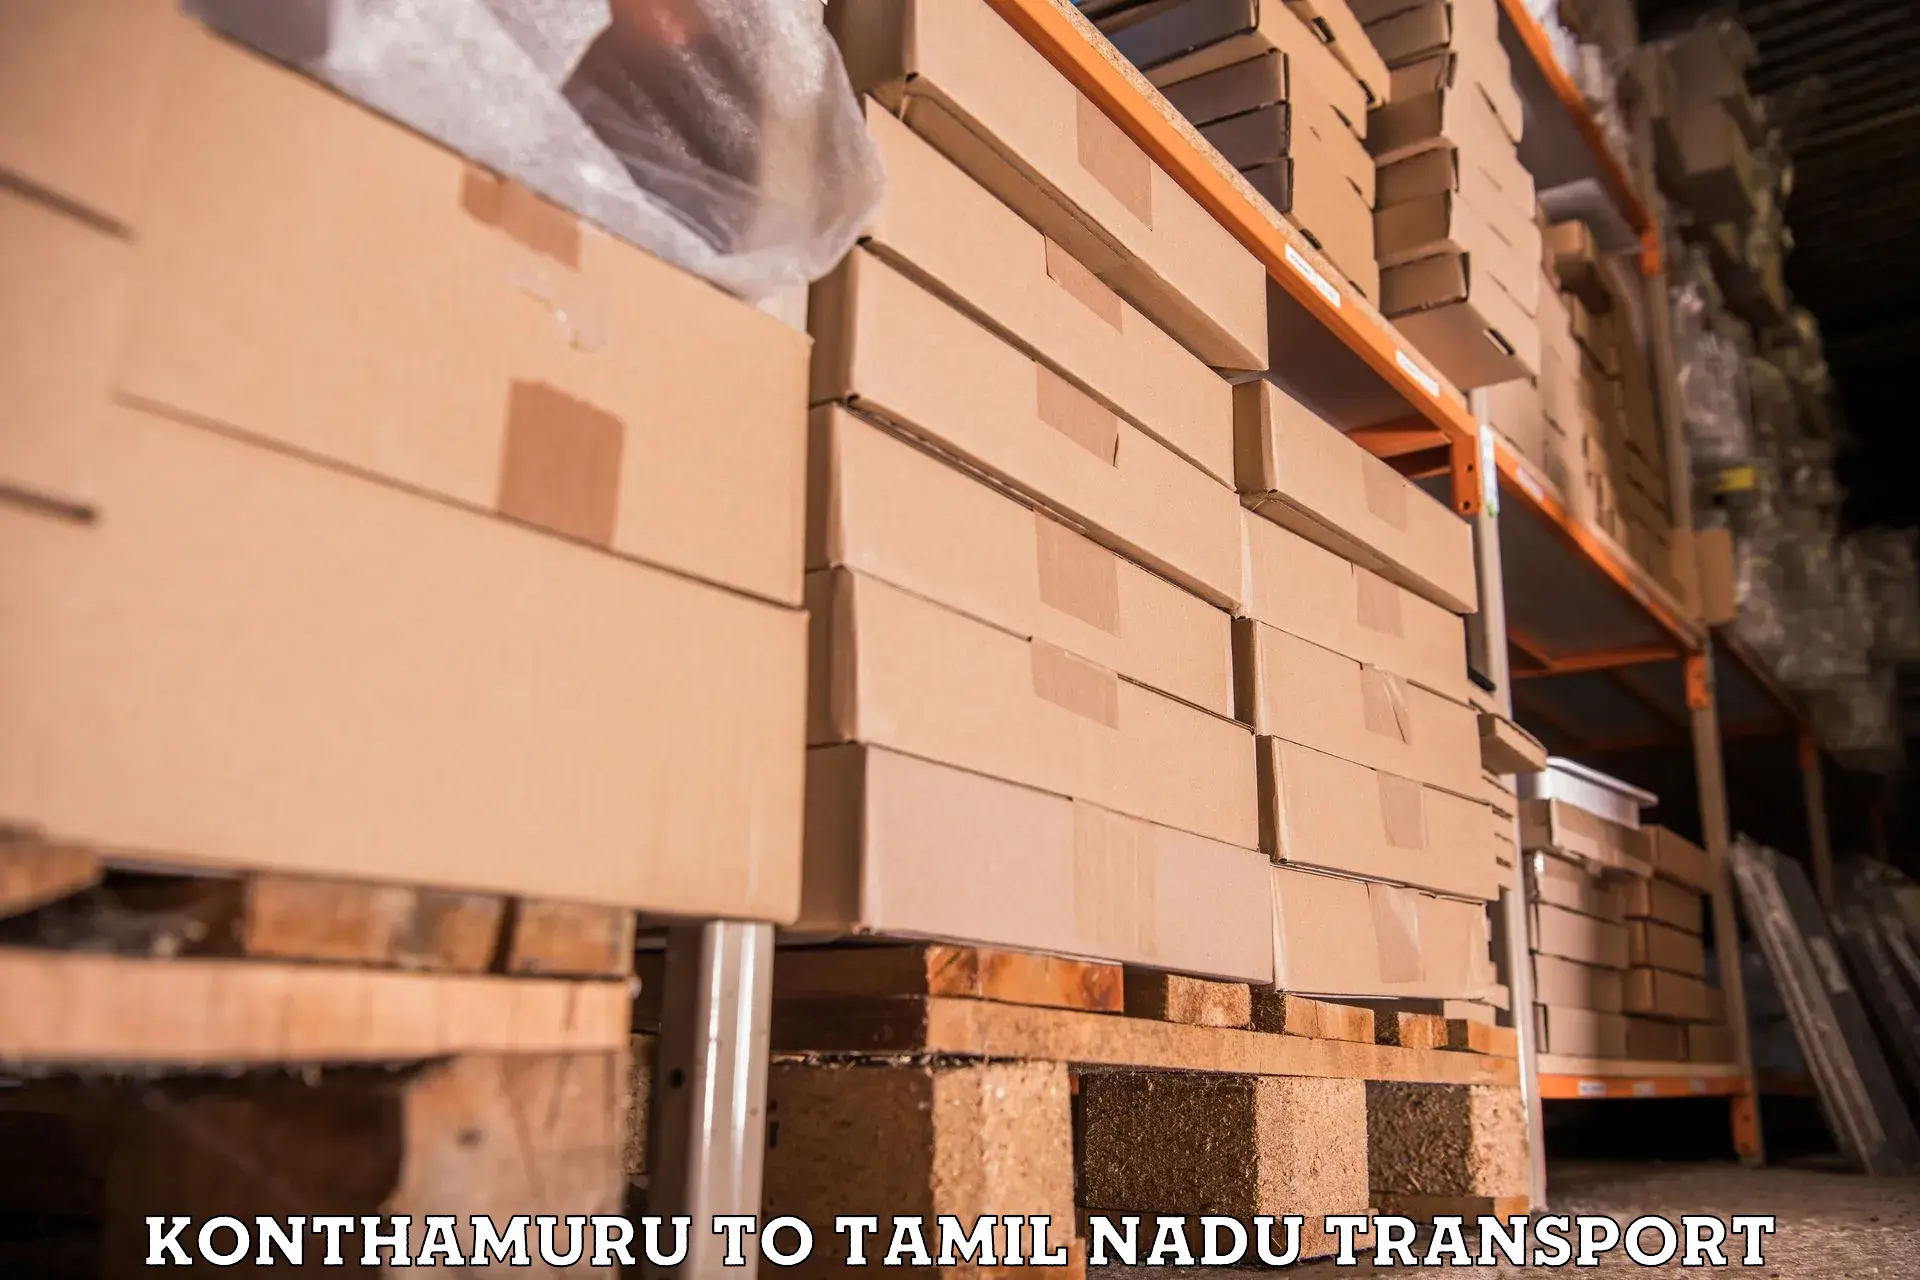 Furniture transport service Konthamuru to Tiruchengode